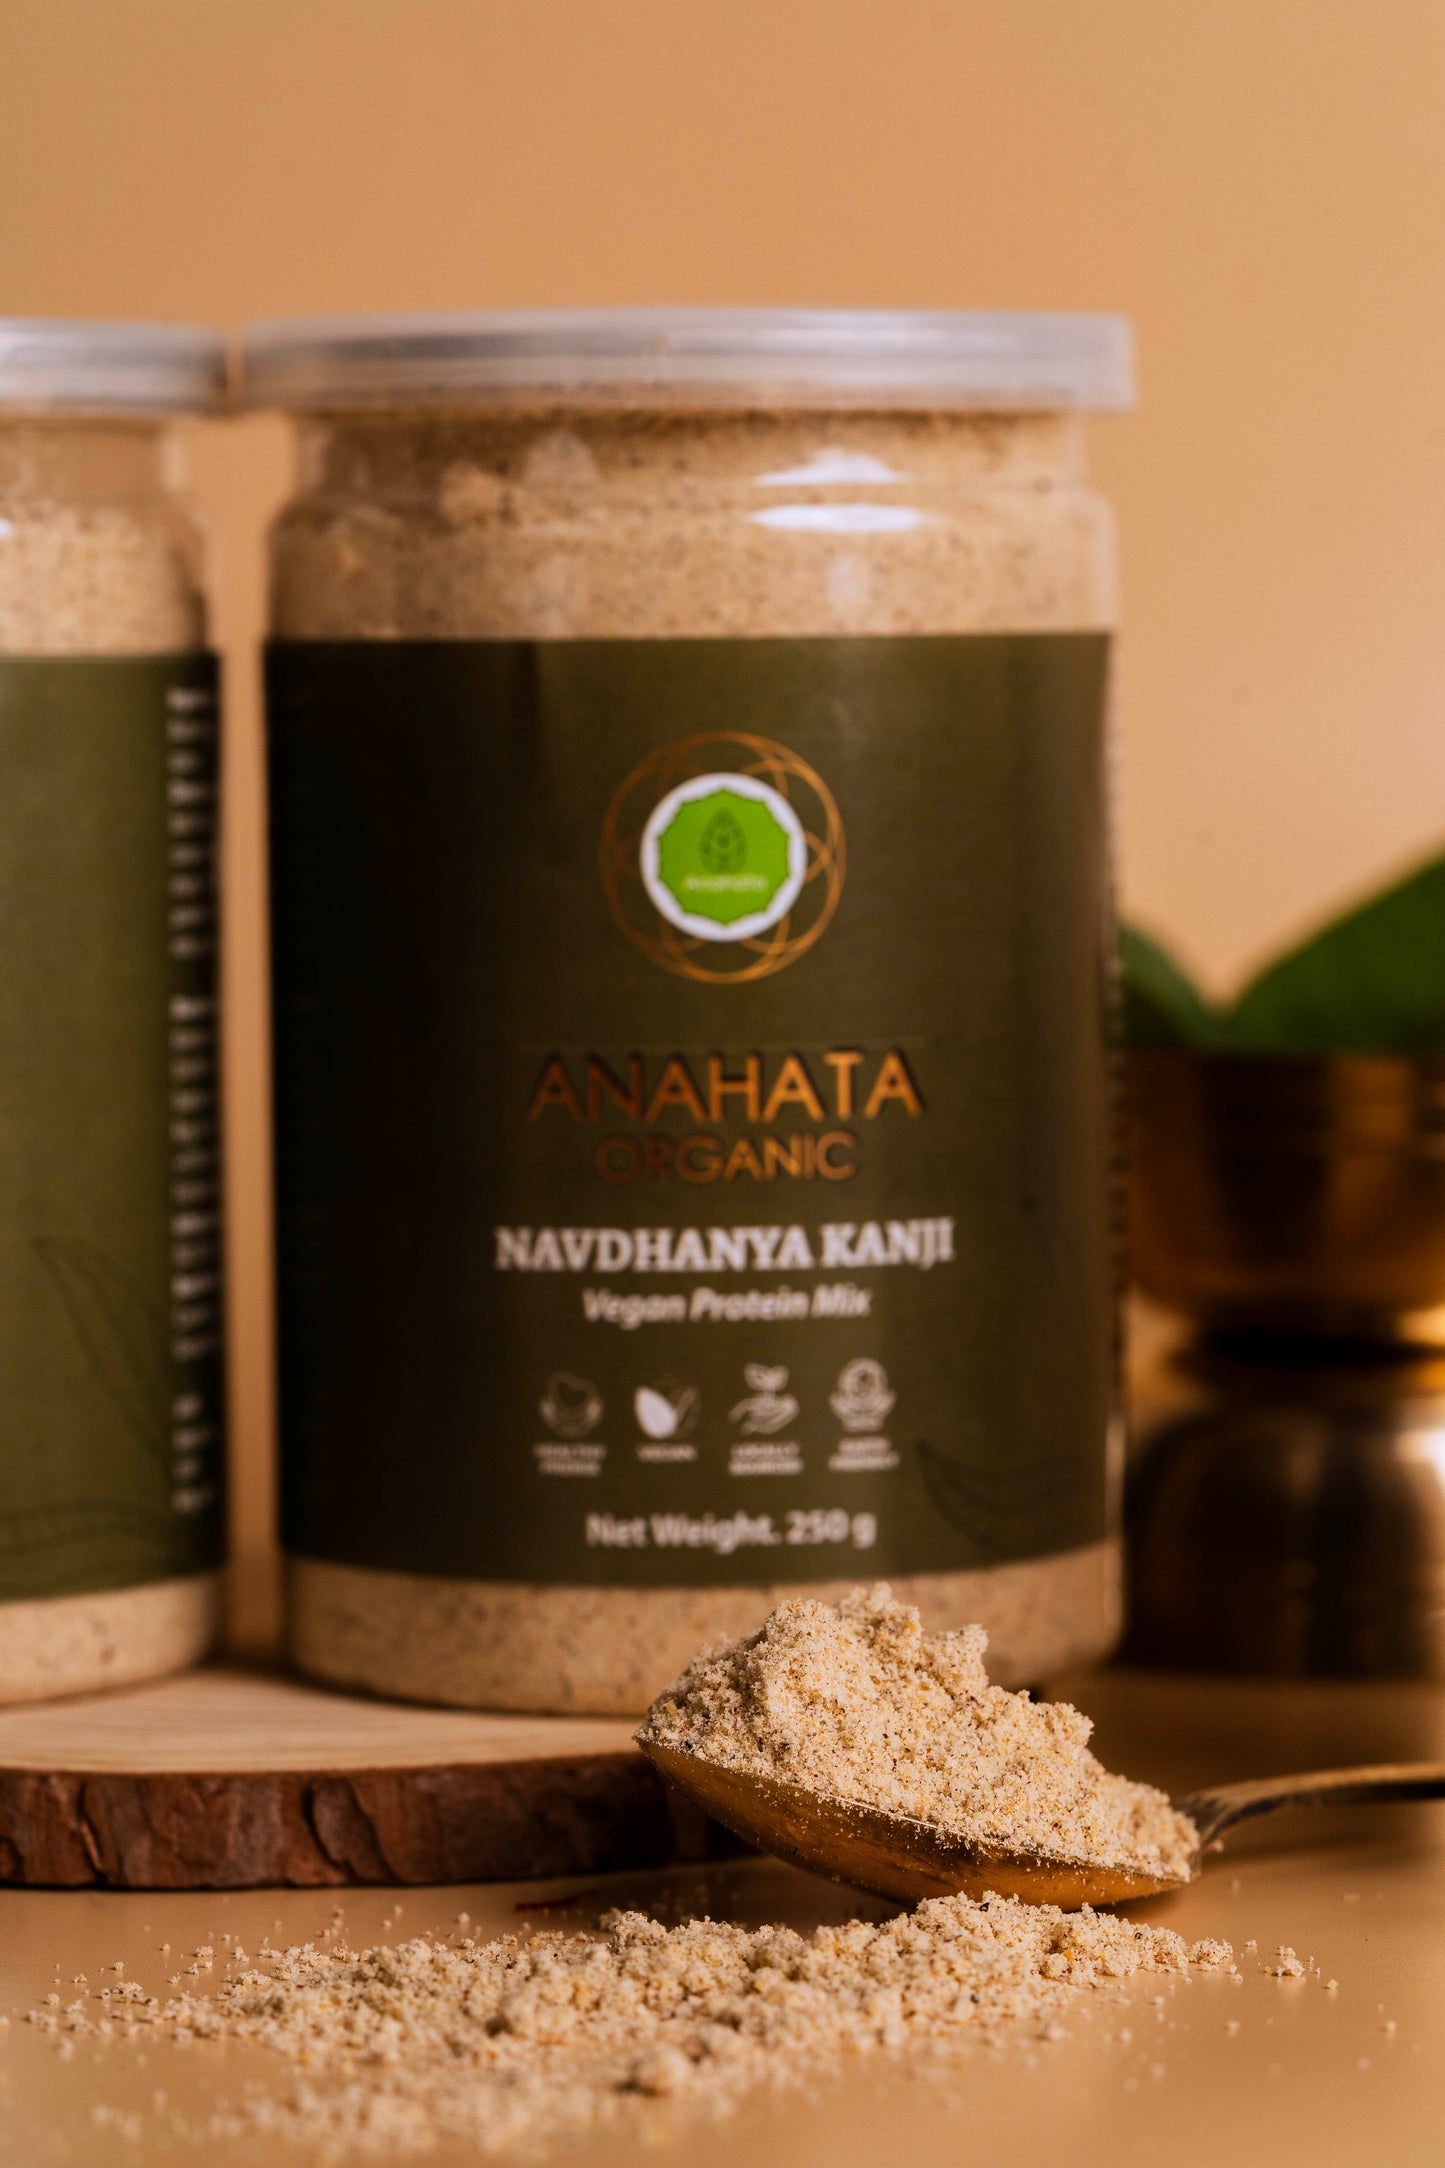 Navdhaniya Kanji - Anahata Organic